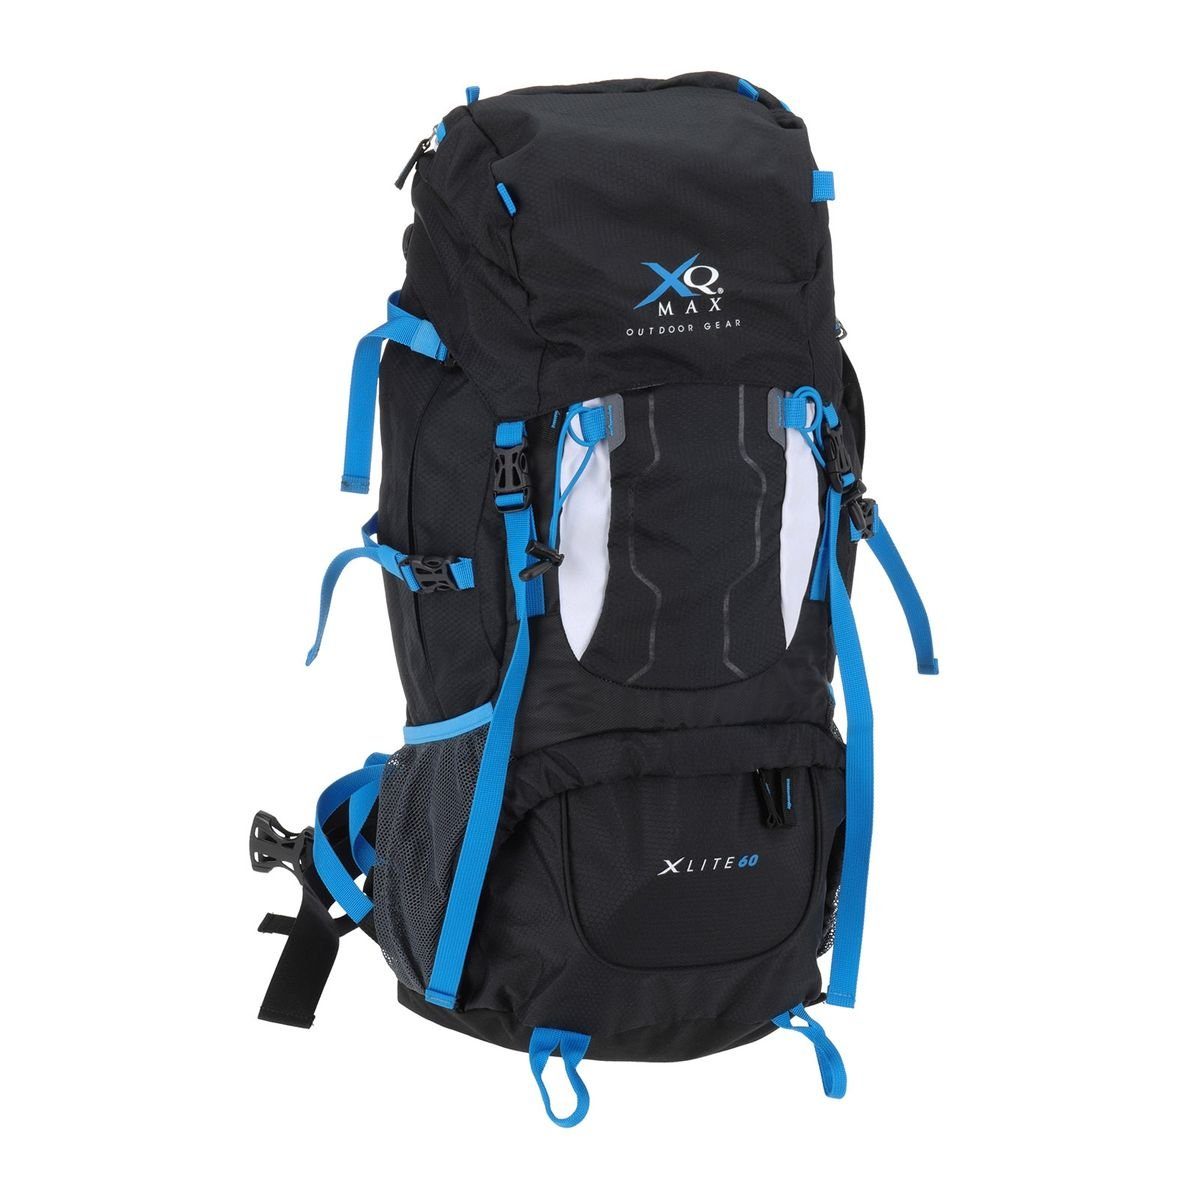 XQMAX Wanderrucksack Wanderrucksack 60L blau Trekkingrucksack Wandern Rucksack, mit verstellbarem Rückensystem